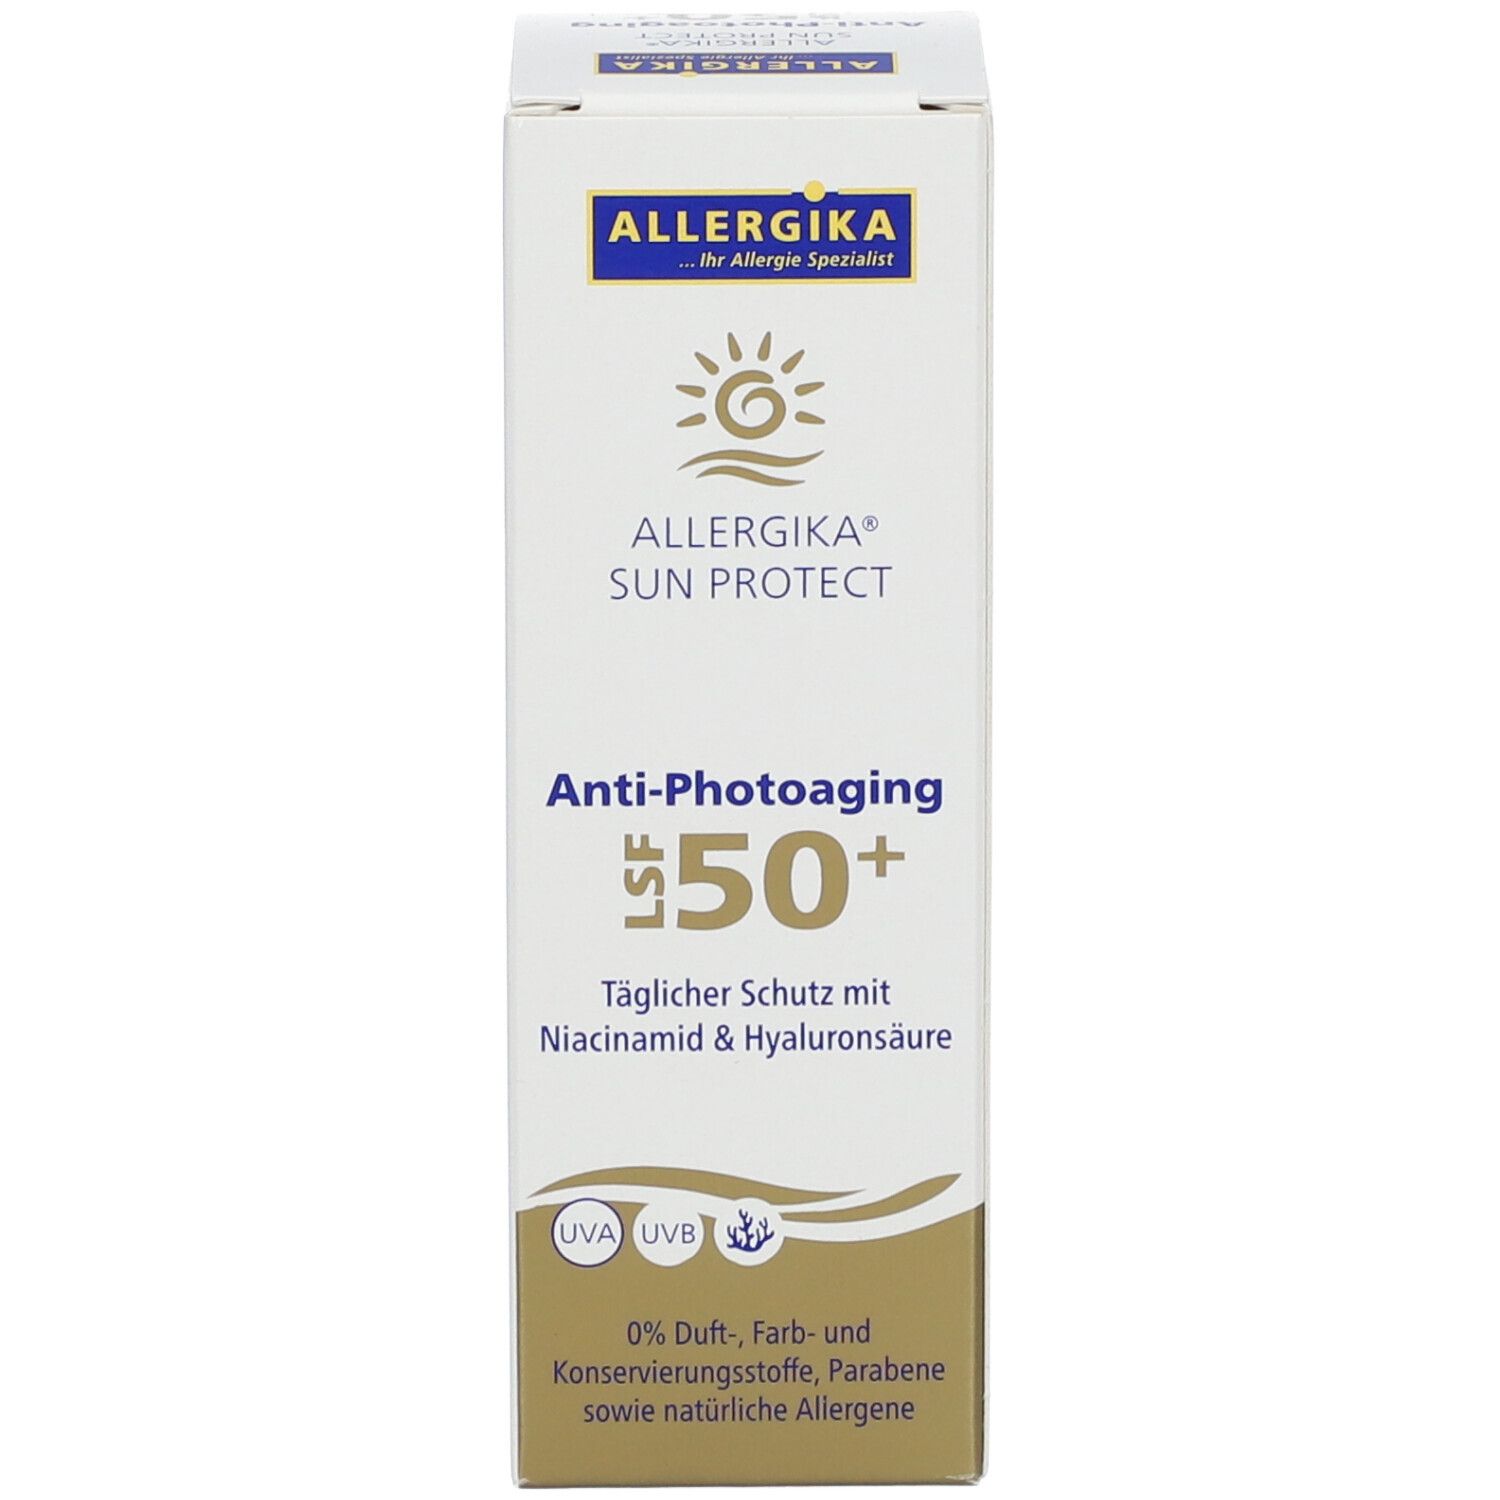 ALLERGIKA SUN PROTECT Anti-Photoaging Creme LSF 50+